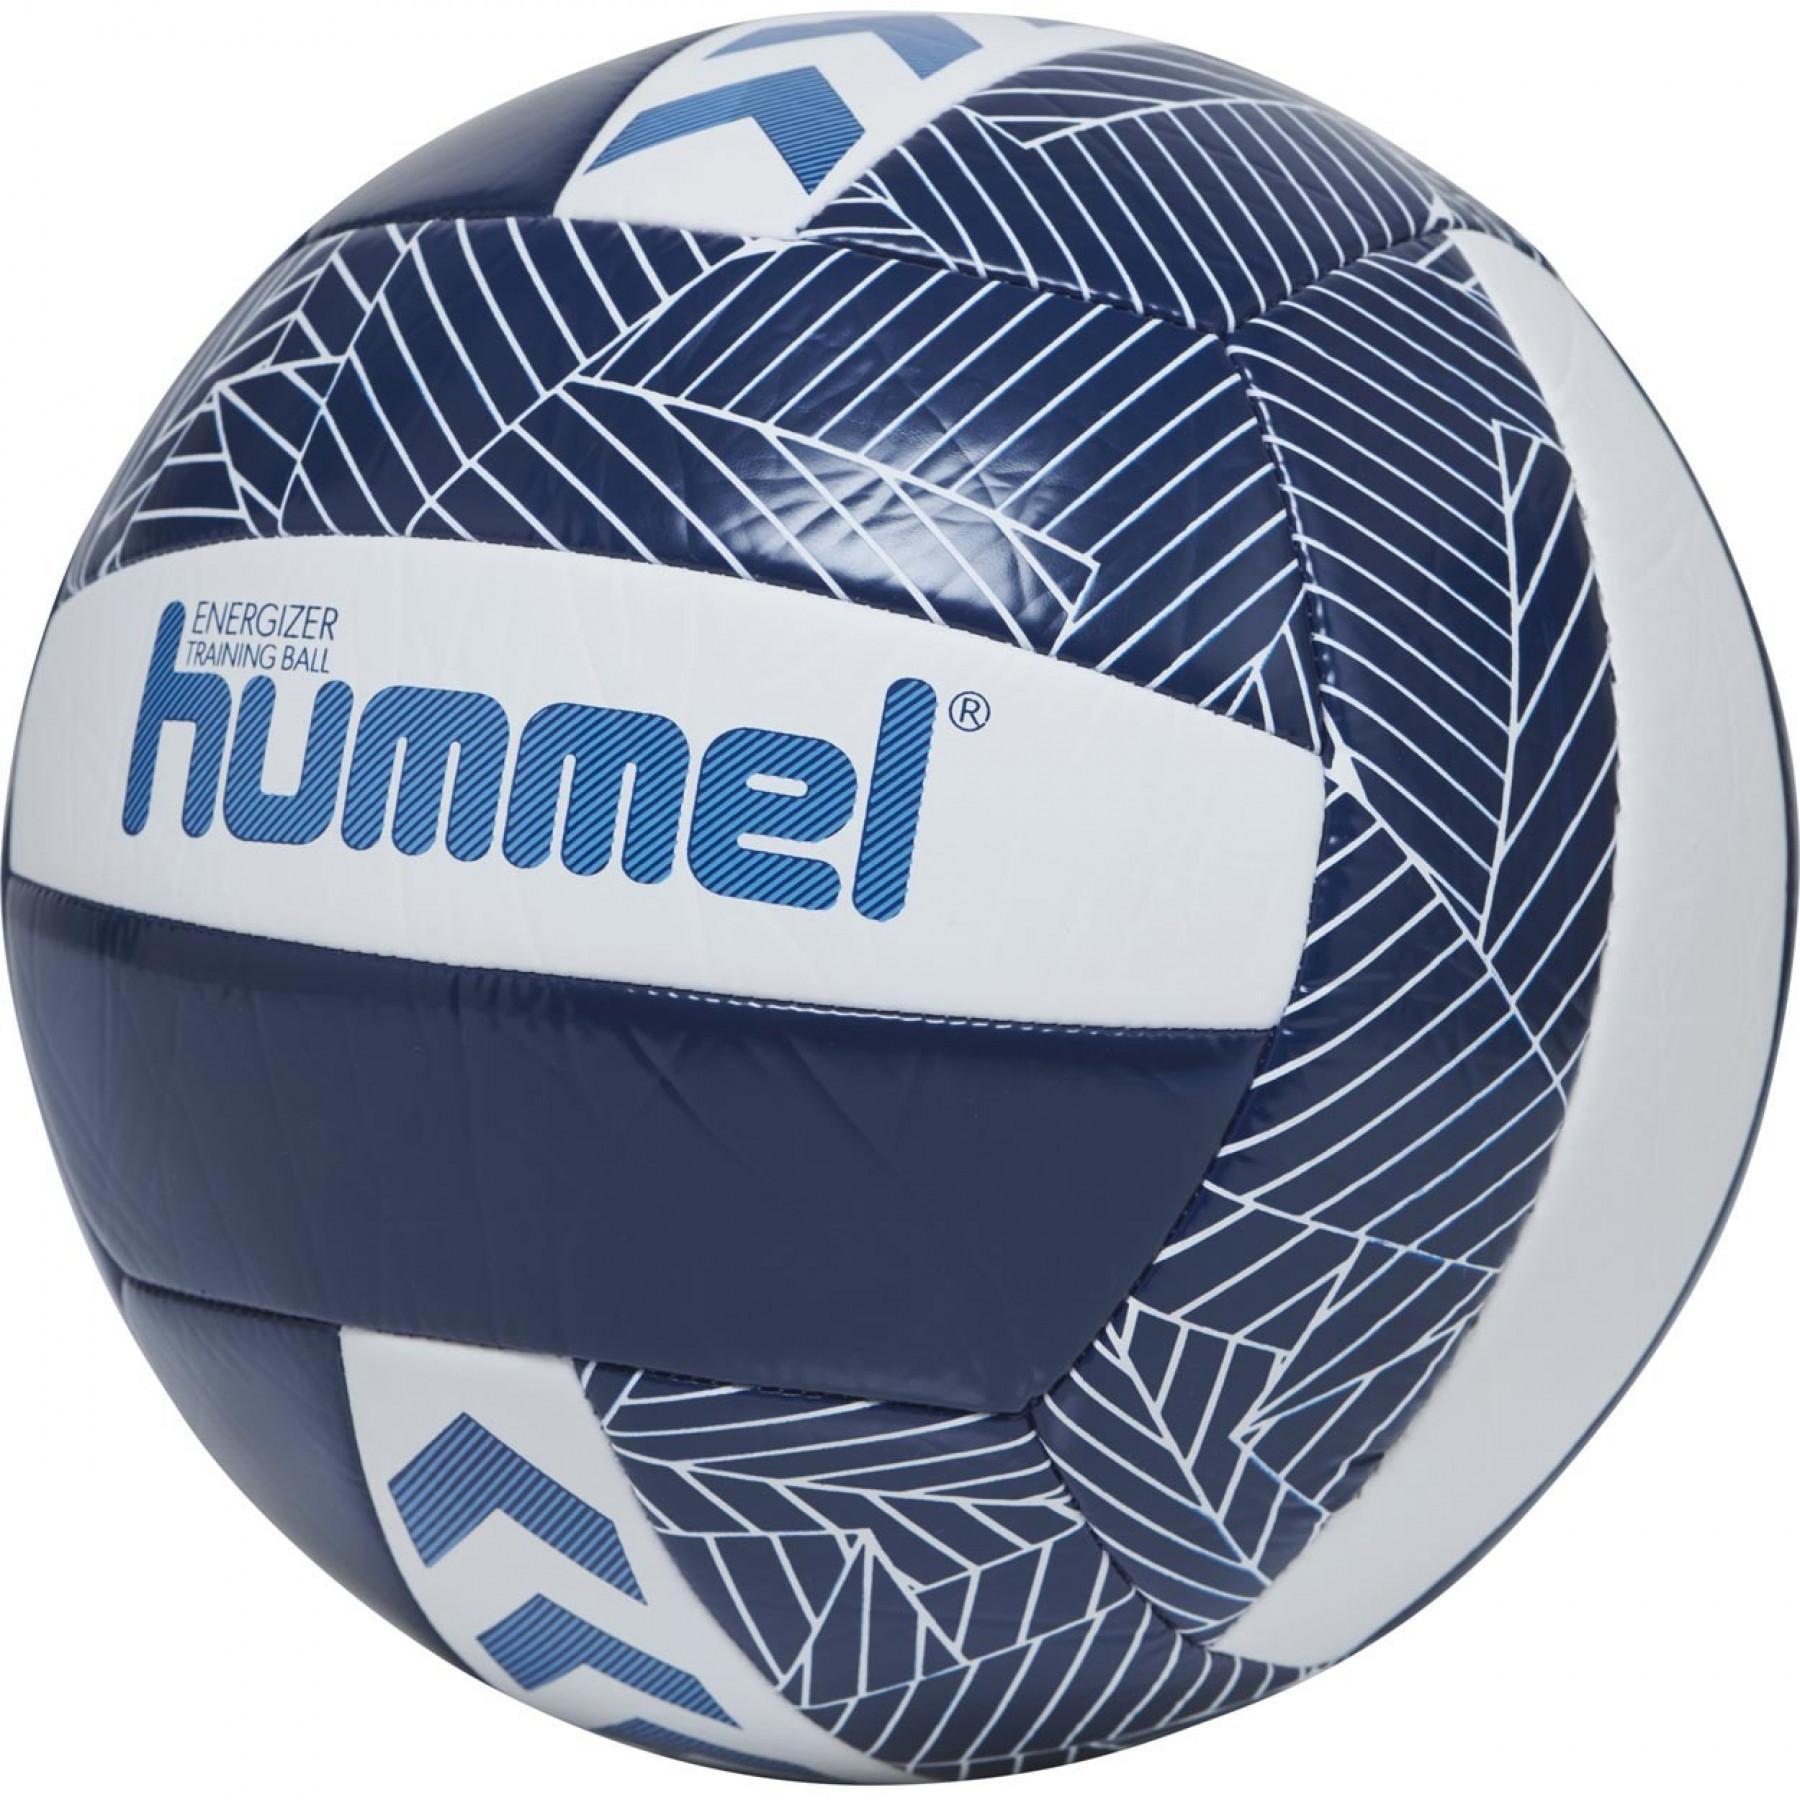 Set van 3 volleyballen Hummel Energizer [Taille5]